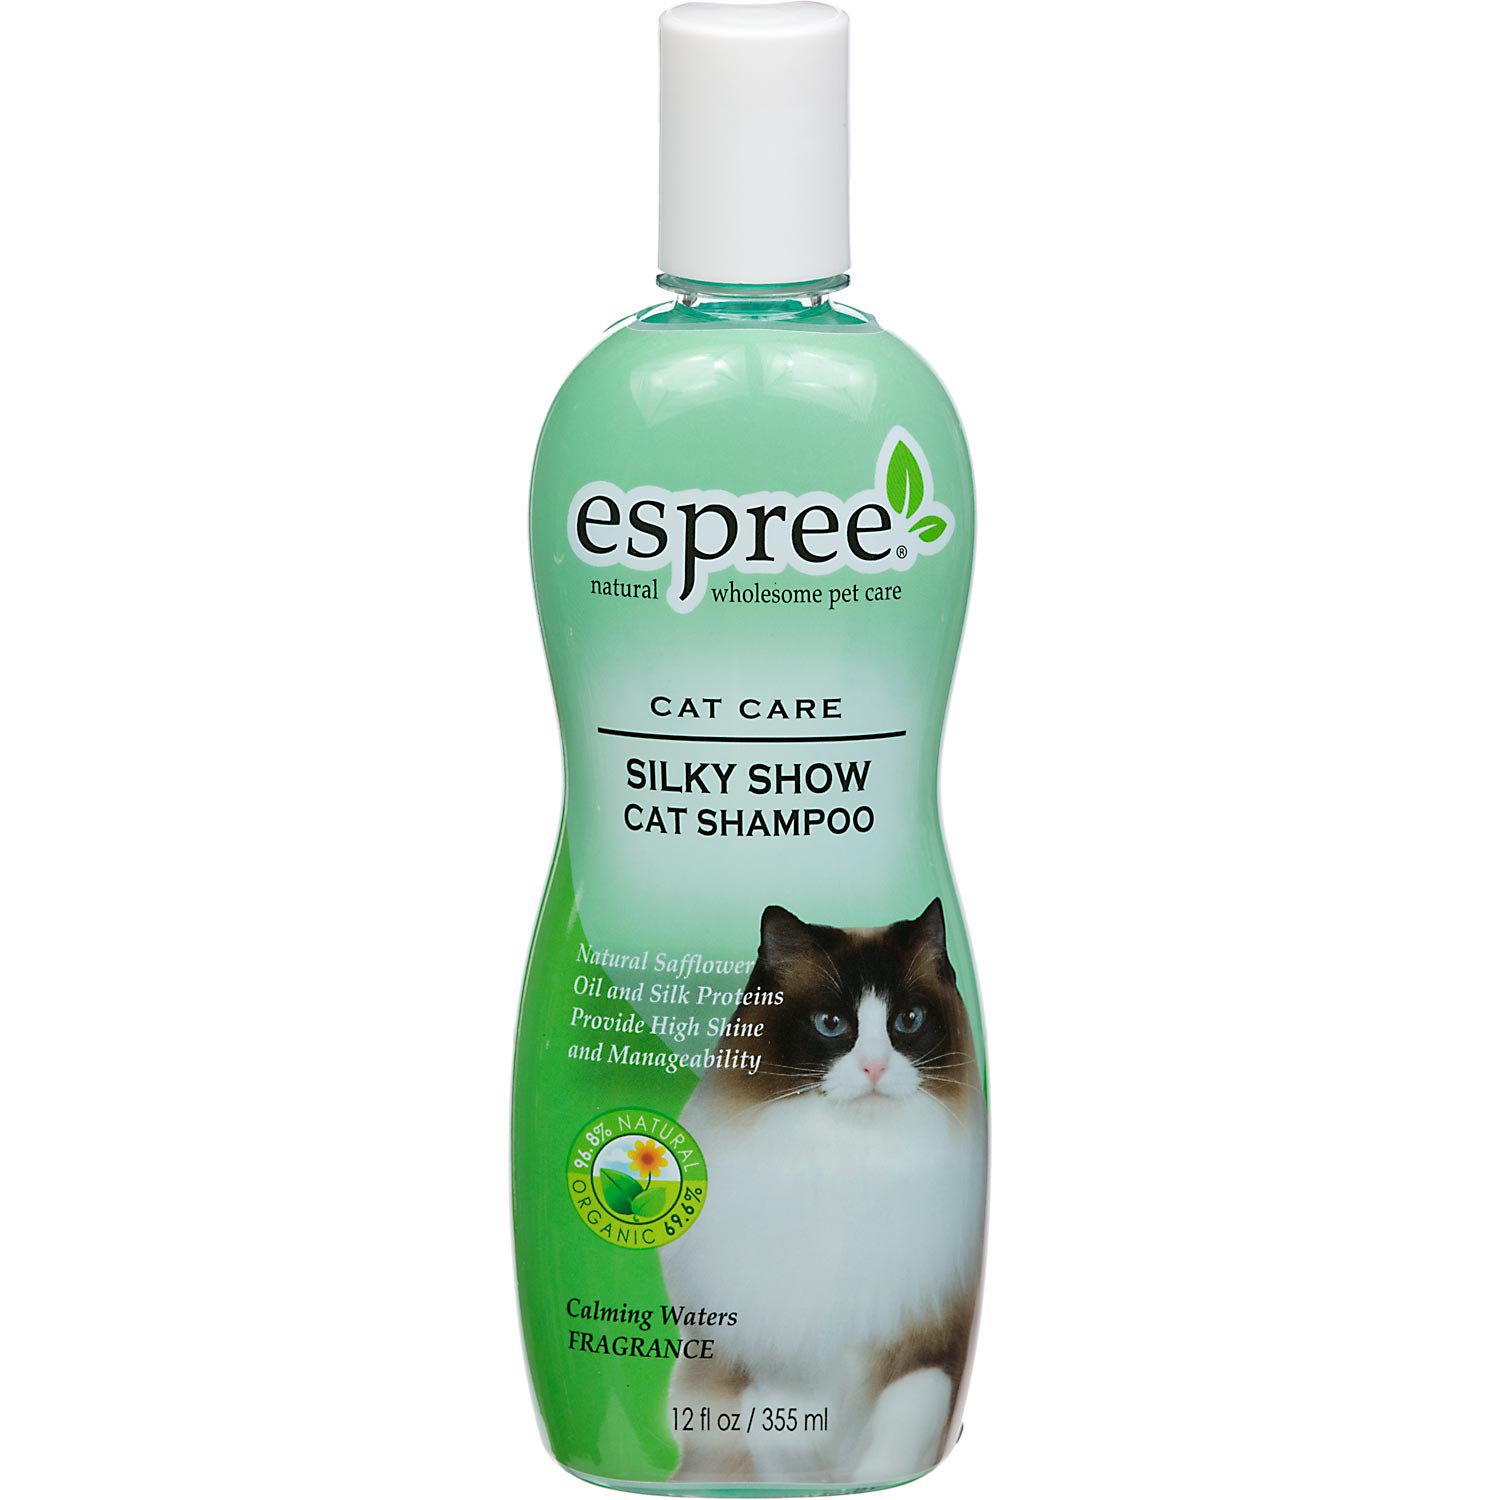 Cat Shampoo - Homecare24